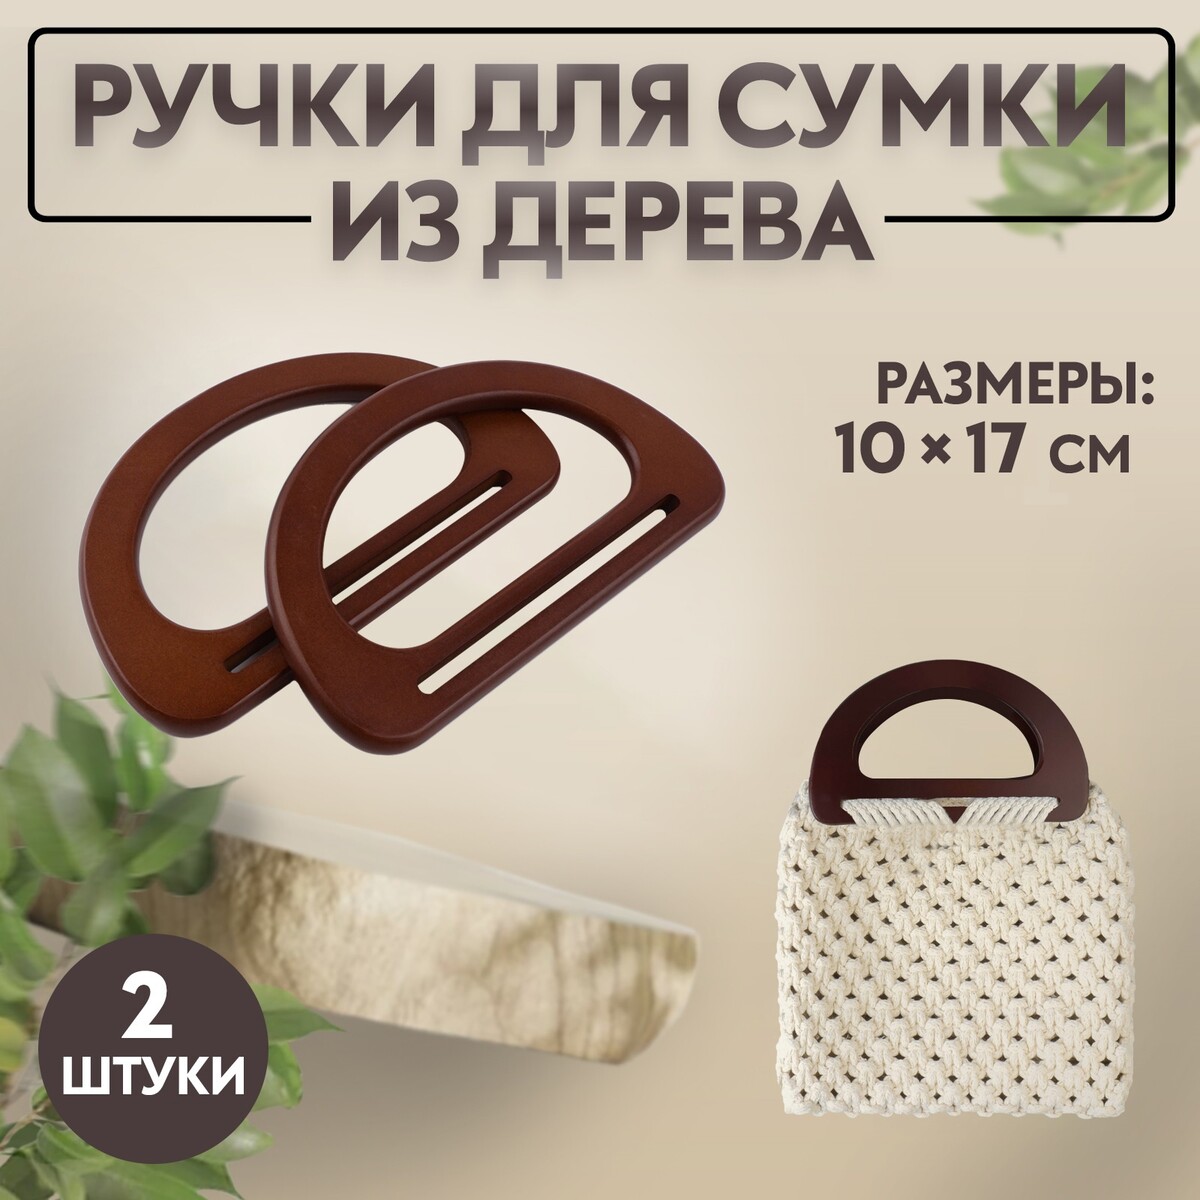 Ручки для сумки деревянные, 10 × 17 см, 2 шт, цвет темно-коричневый ручки для сумки 2 шт бамбук 17 × 13 15 5 × 11 5 см темно коричневый